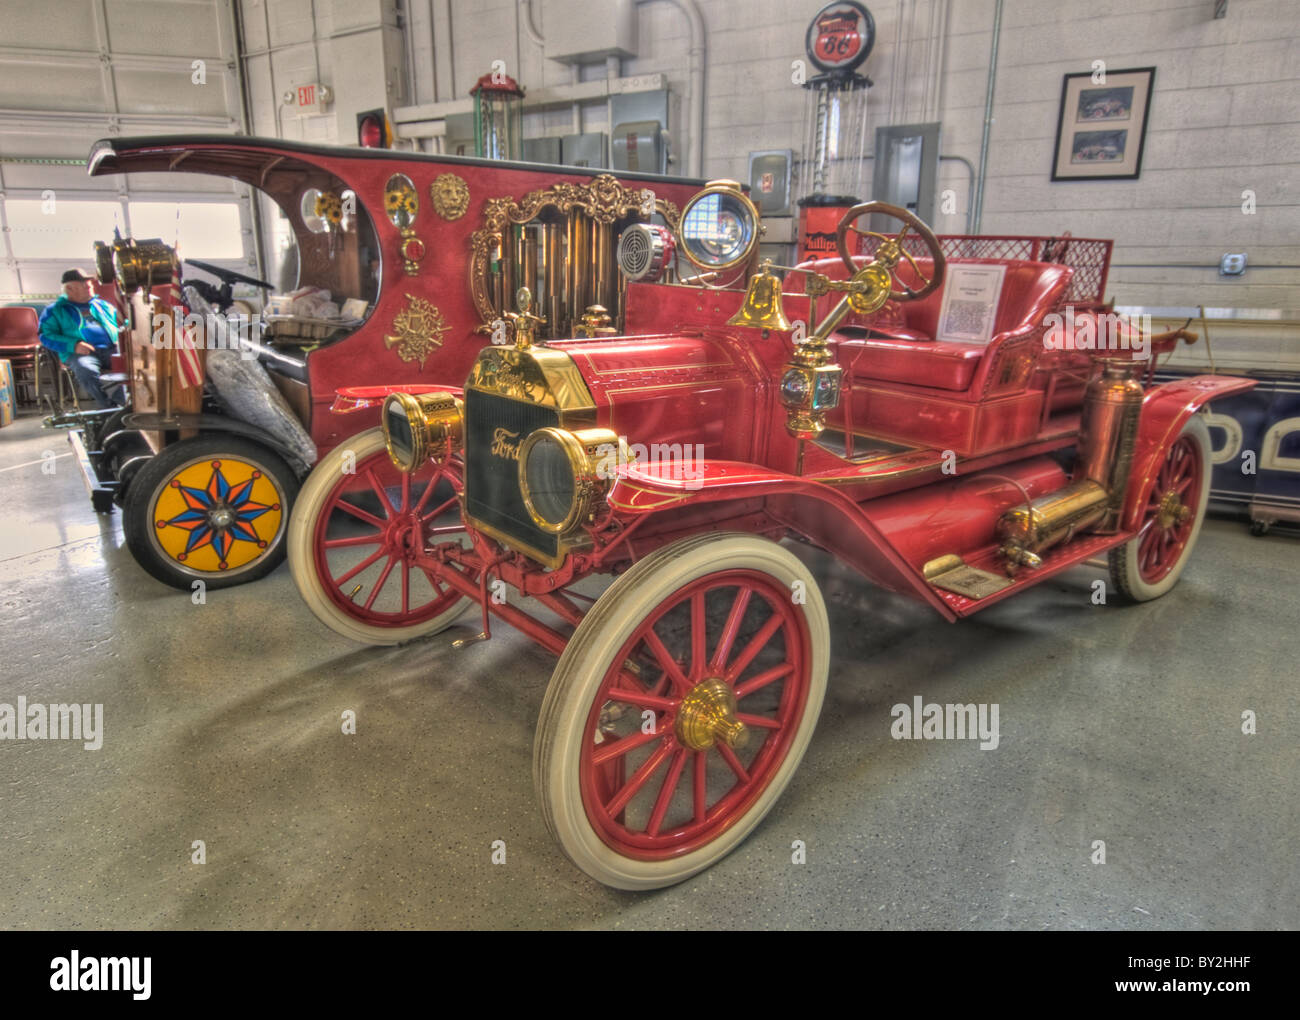 1910 Ford Model T Fire Truck & équipement avec un calliope vers 1906 dans l'arrière-plan Banque D'Images